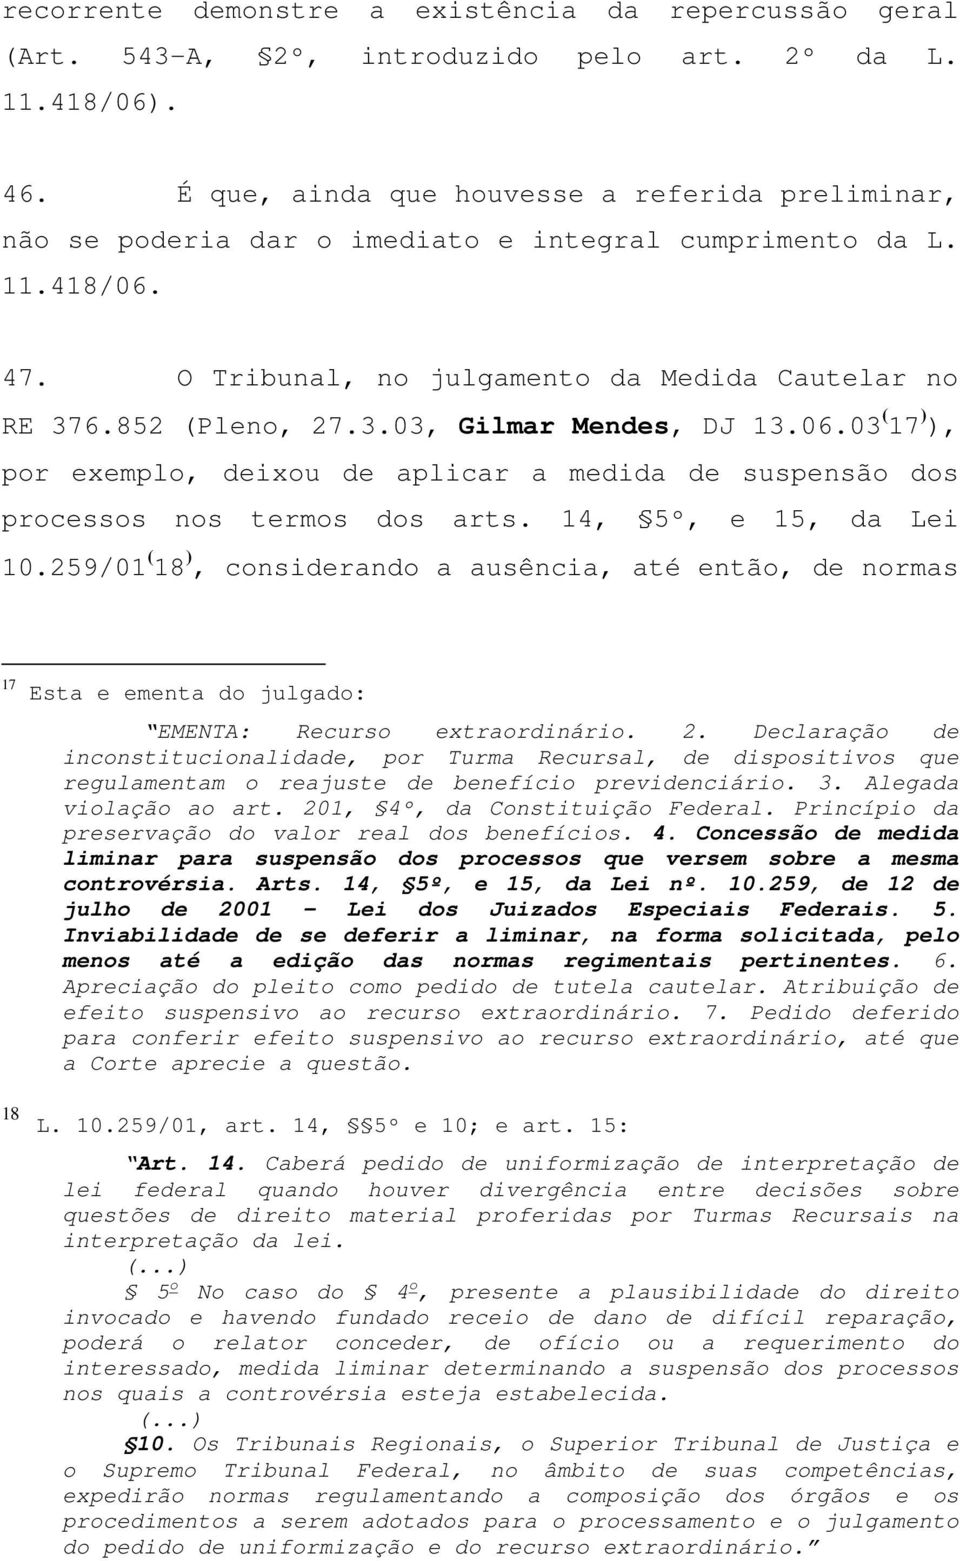 6.852 (Pleno, 27.3.03, Gilmar Mendes, DJ 13.06.03 ( 17 ) ), por exemplo, deixou de aplicar a medida de suspensão dos processos nos termos dos arts. 14, 5º, e 15, da Lei 10.